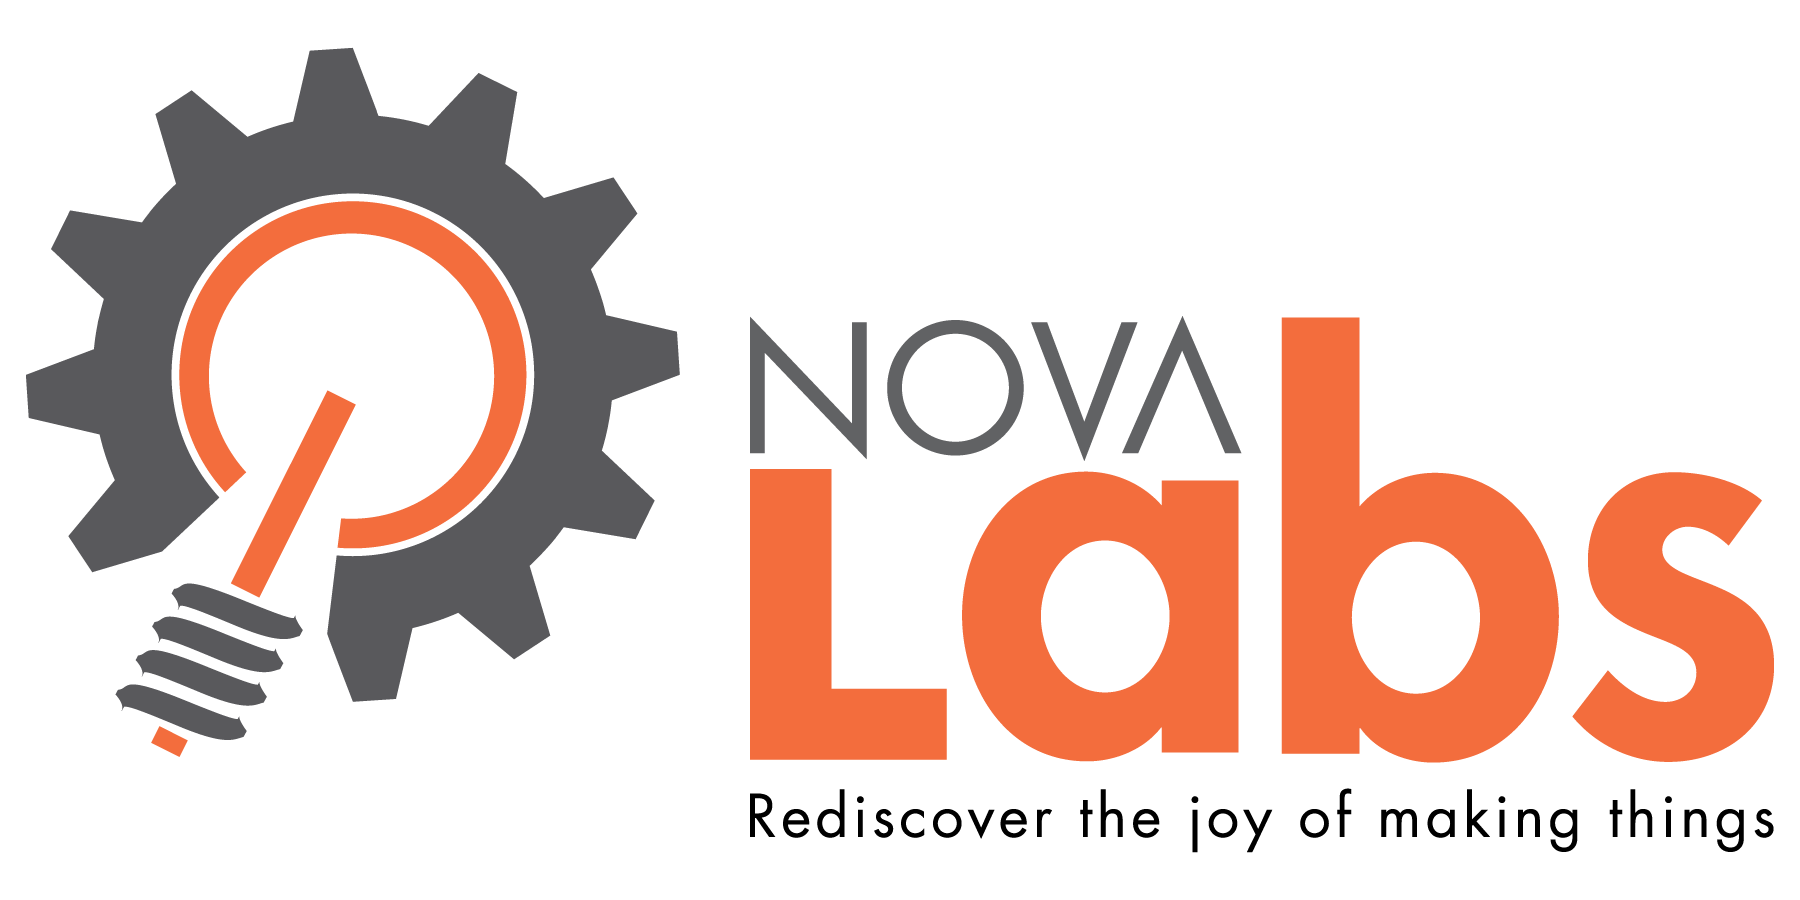 Nova-labs logo 1800x900.png